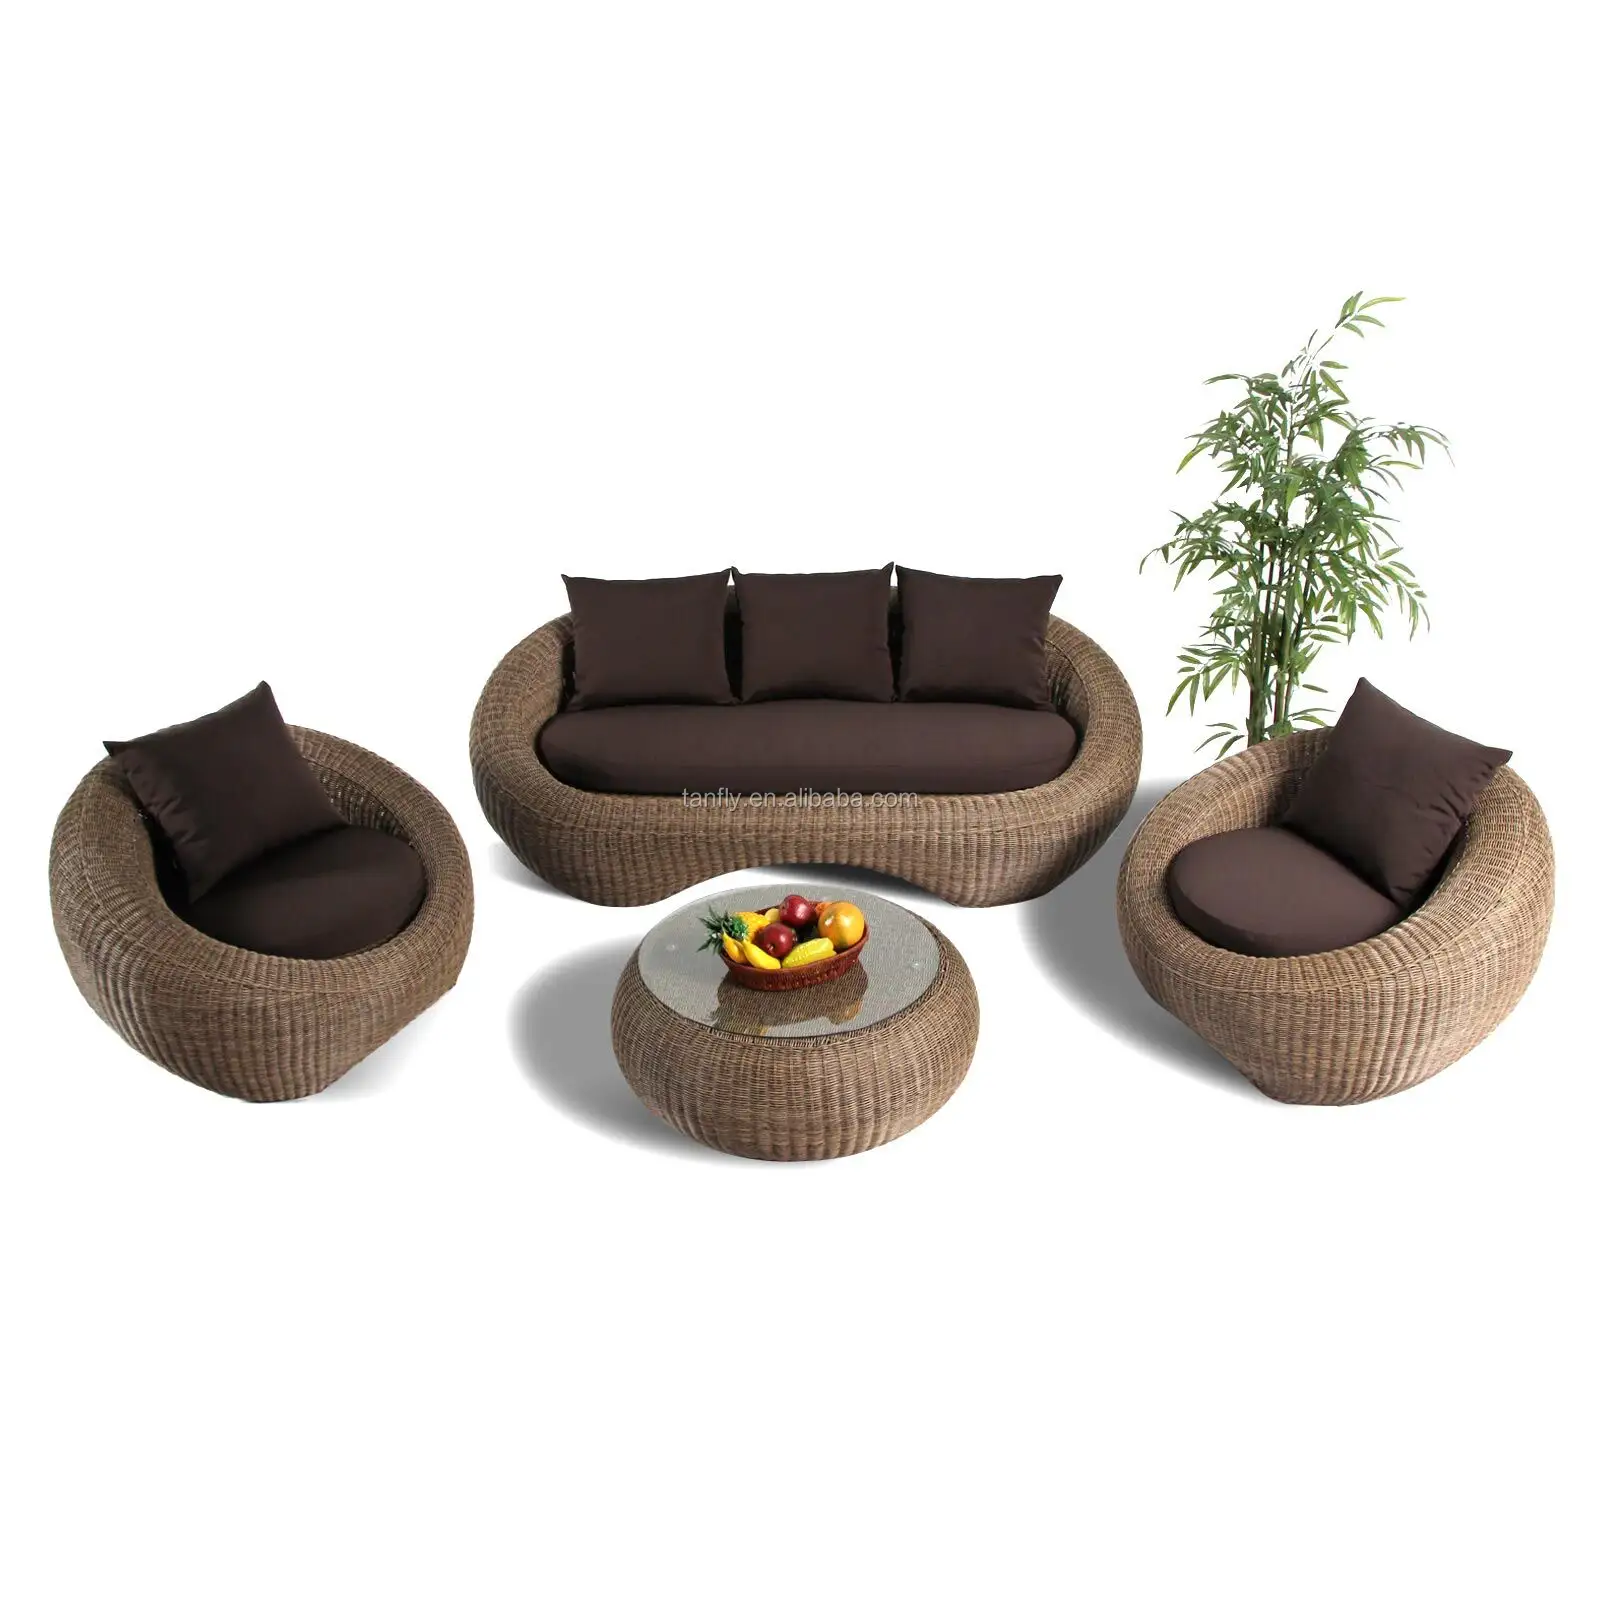 Commercio Assurance Hot Vendita Esclusivo All'aperto mobili In Rattan del patio divano set mobili